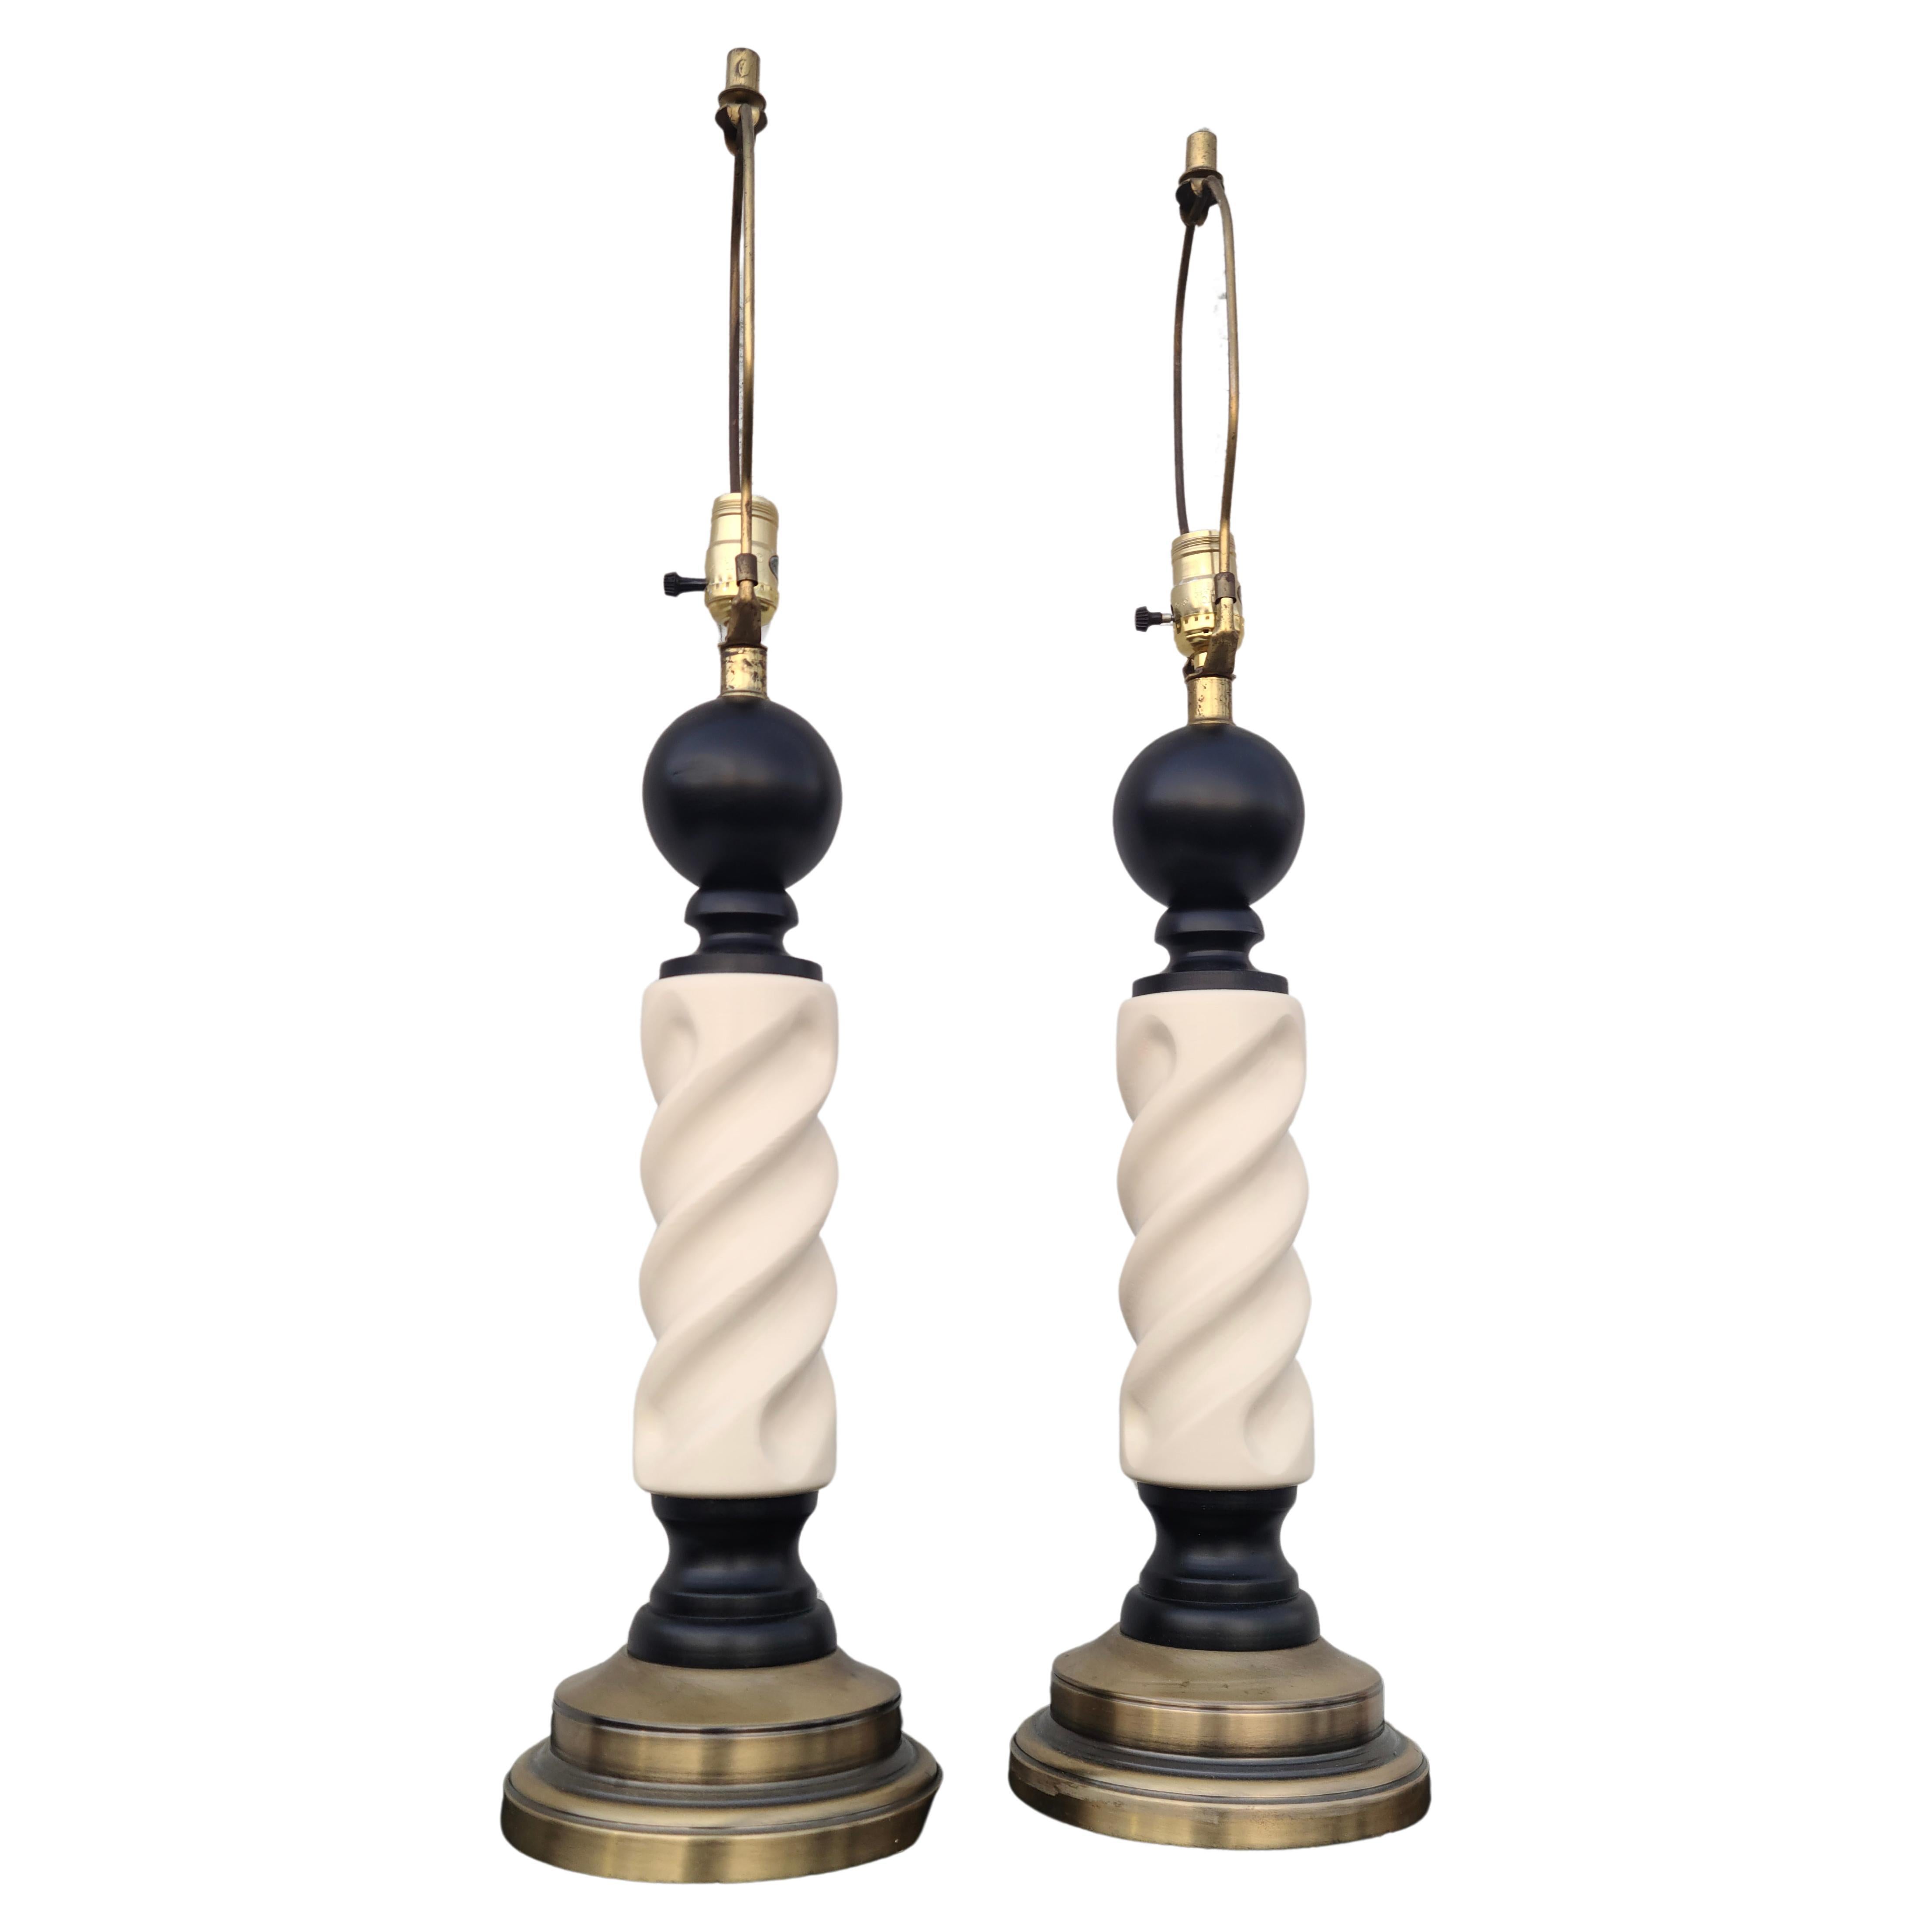 Paar dekorative moderne Barbierstangenlampen aus der Mitte des Jahrhunderts.
Originaler Waschsockel und Armaturen aus antikem Messing.
Die Lackierung wurde aufgefrischt.

Mittelgroßer Körper. 32